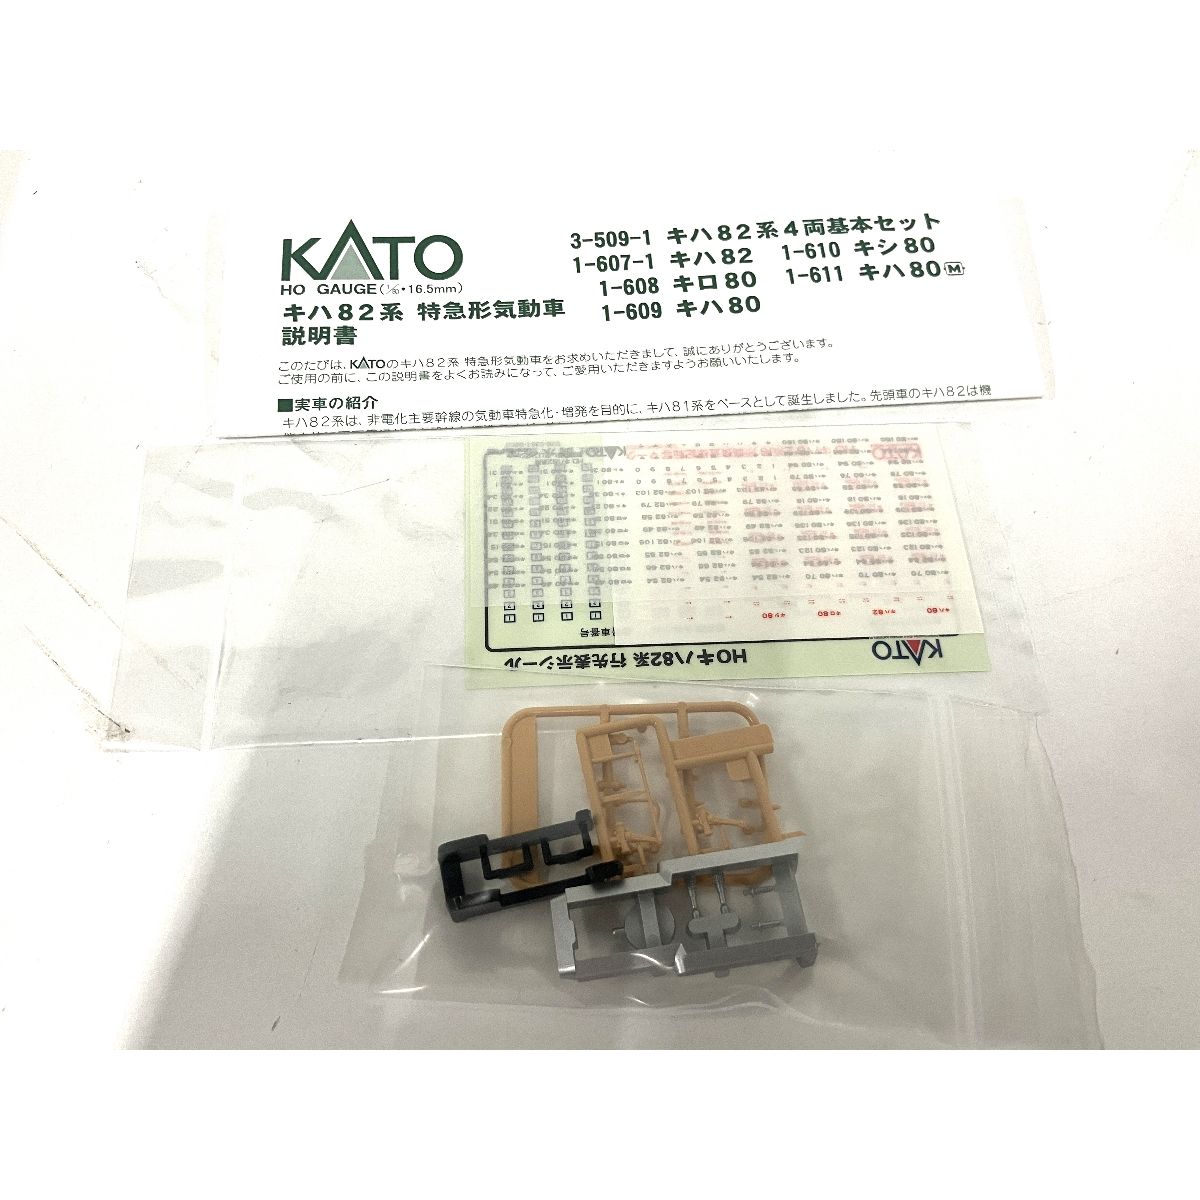 動作保証】 KATO 1-611 キハ 80 M 動力車 鉄道模型 HOゲージ 中古 良好 